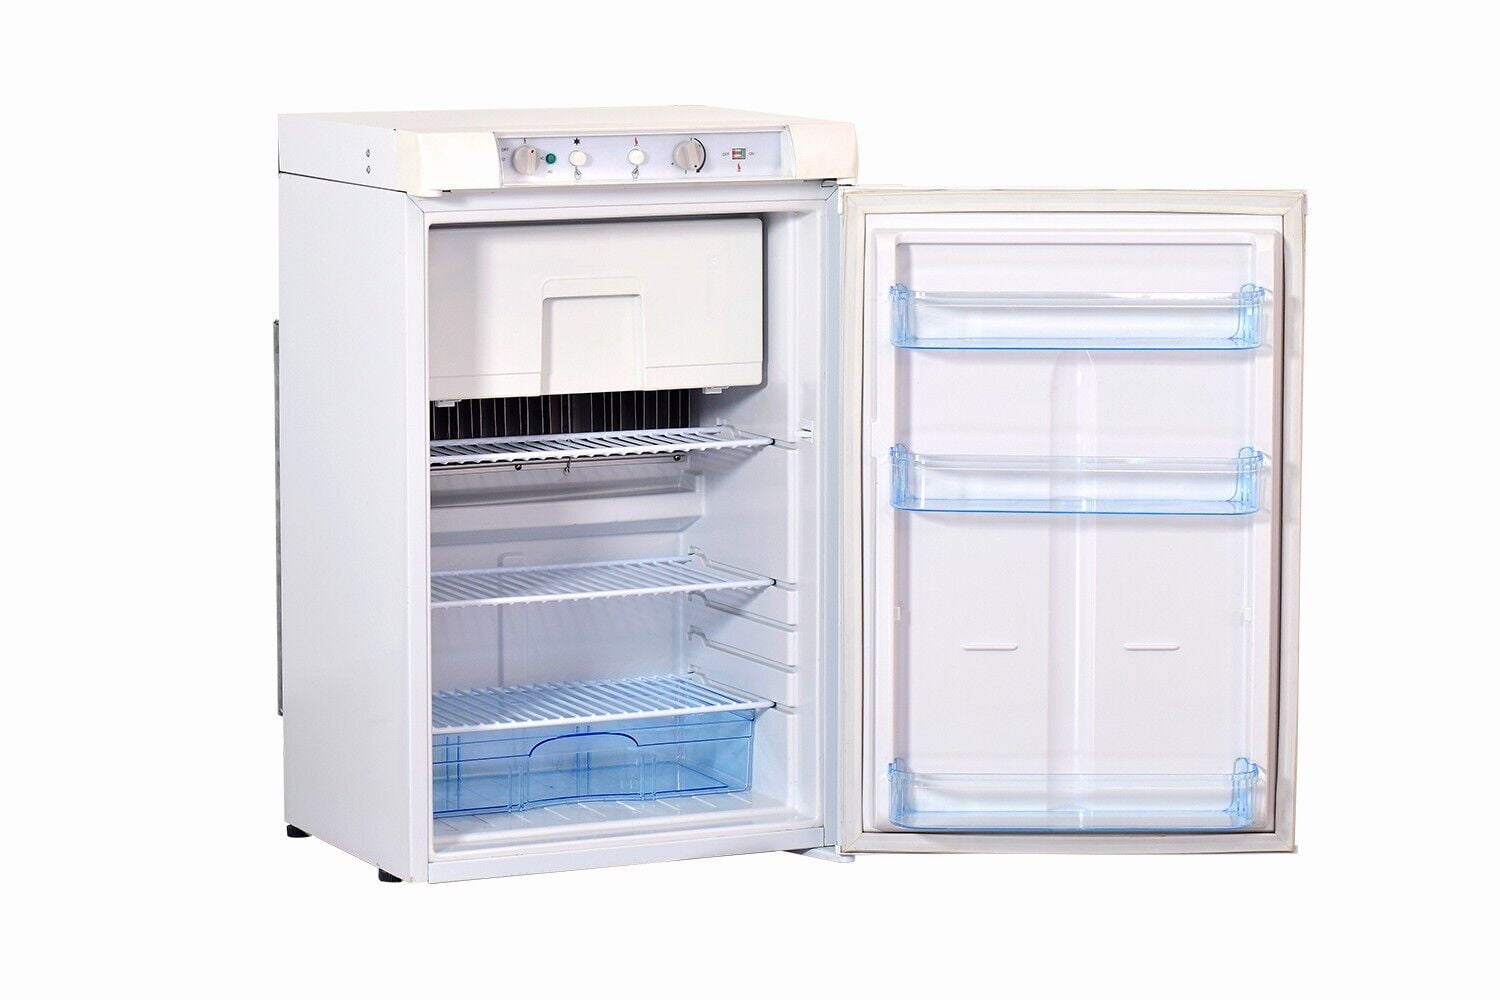 Smad 3 Way 3.5 Cu ft Propane Refrigerator Freezer 110V/12V/Gas Caravan  Camper RV 